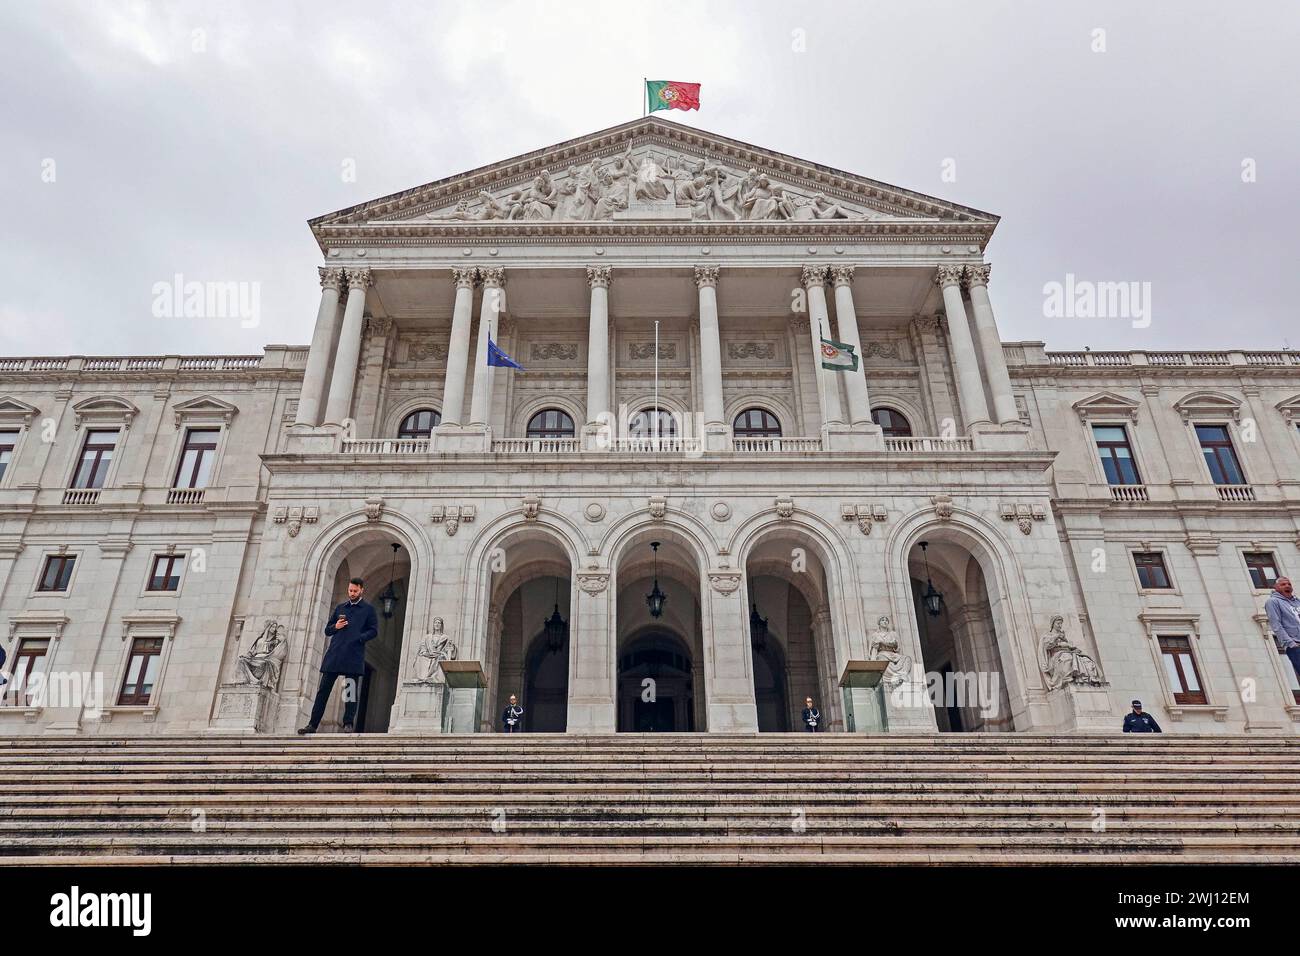 Portugal, Lisbonne, Palacio de Sao Bento - Palais Saint Benoît - à Lisbonne est le siège de l'Assemblée de la République portugaise, le Parlement Banque D'Images